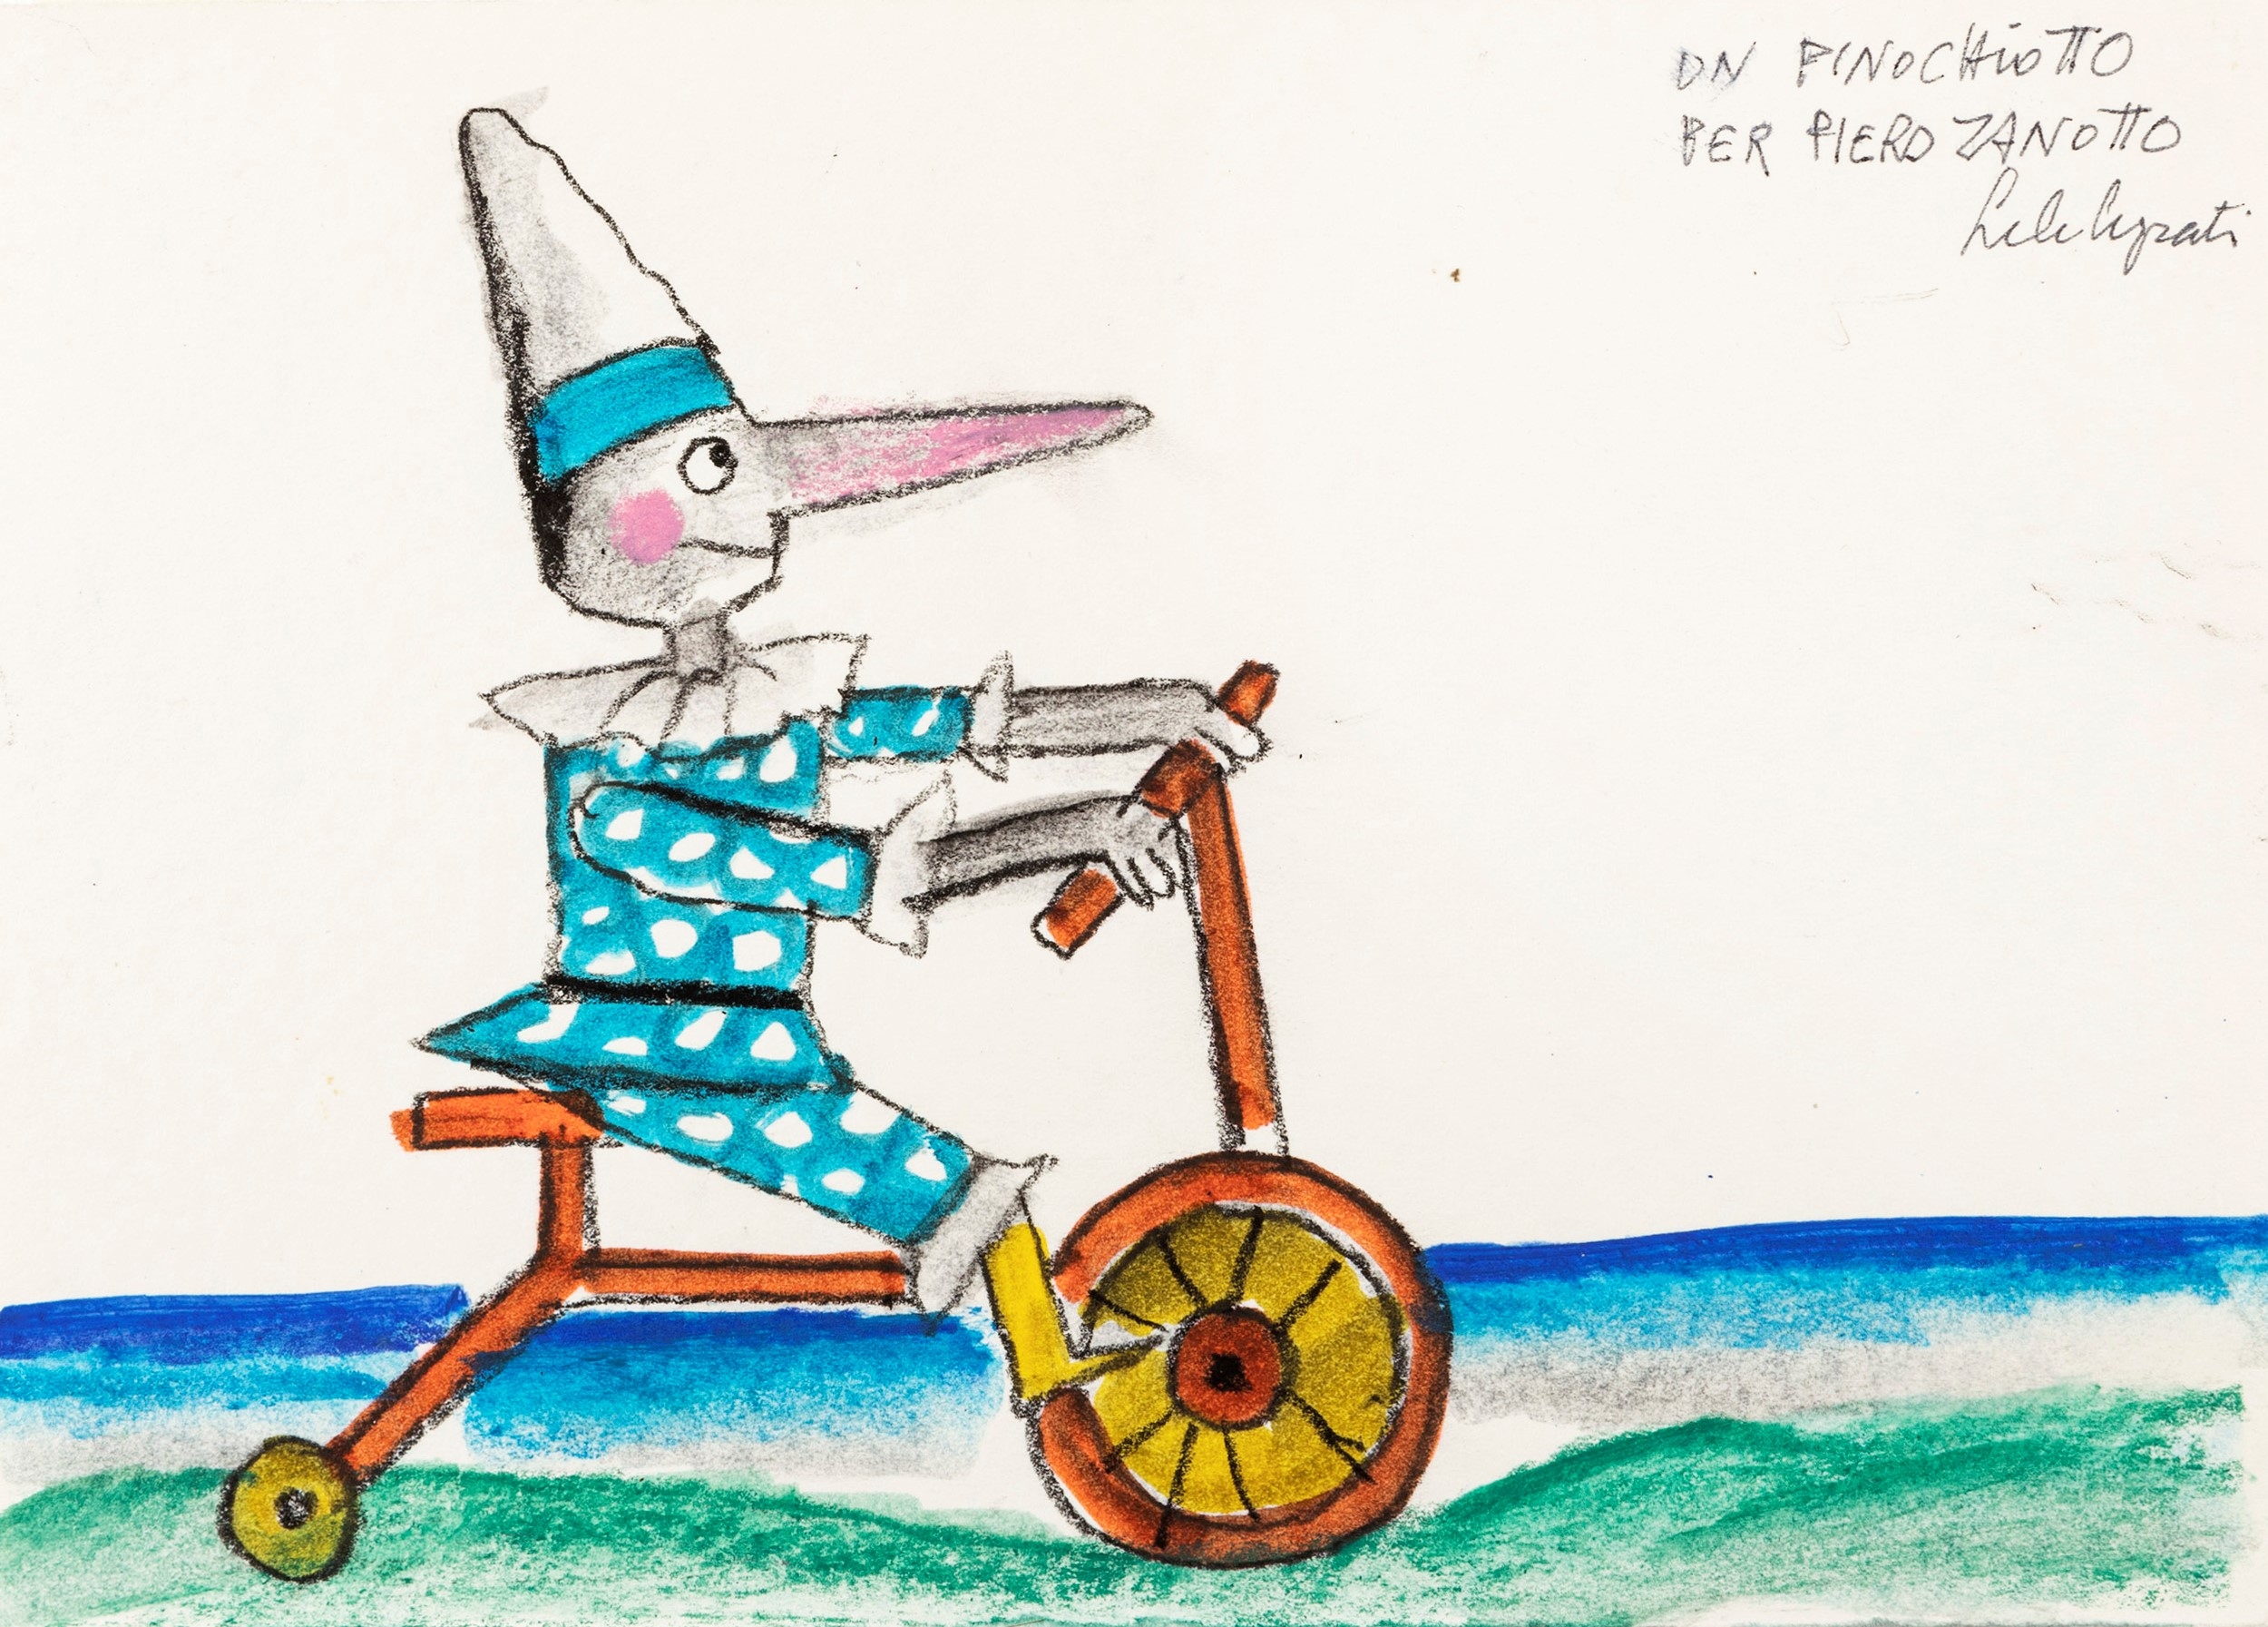 Pinocchio in bicicletta by Emanuele Luzzati, 1984